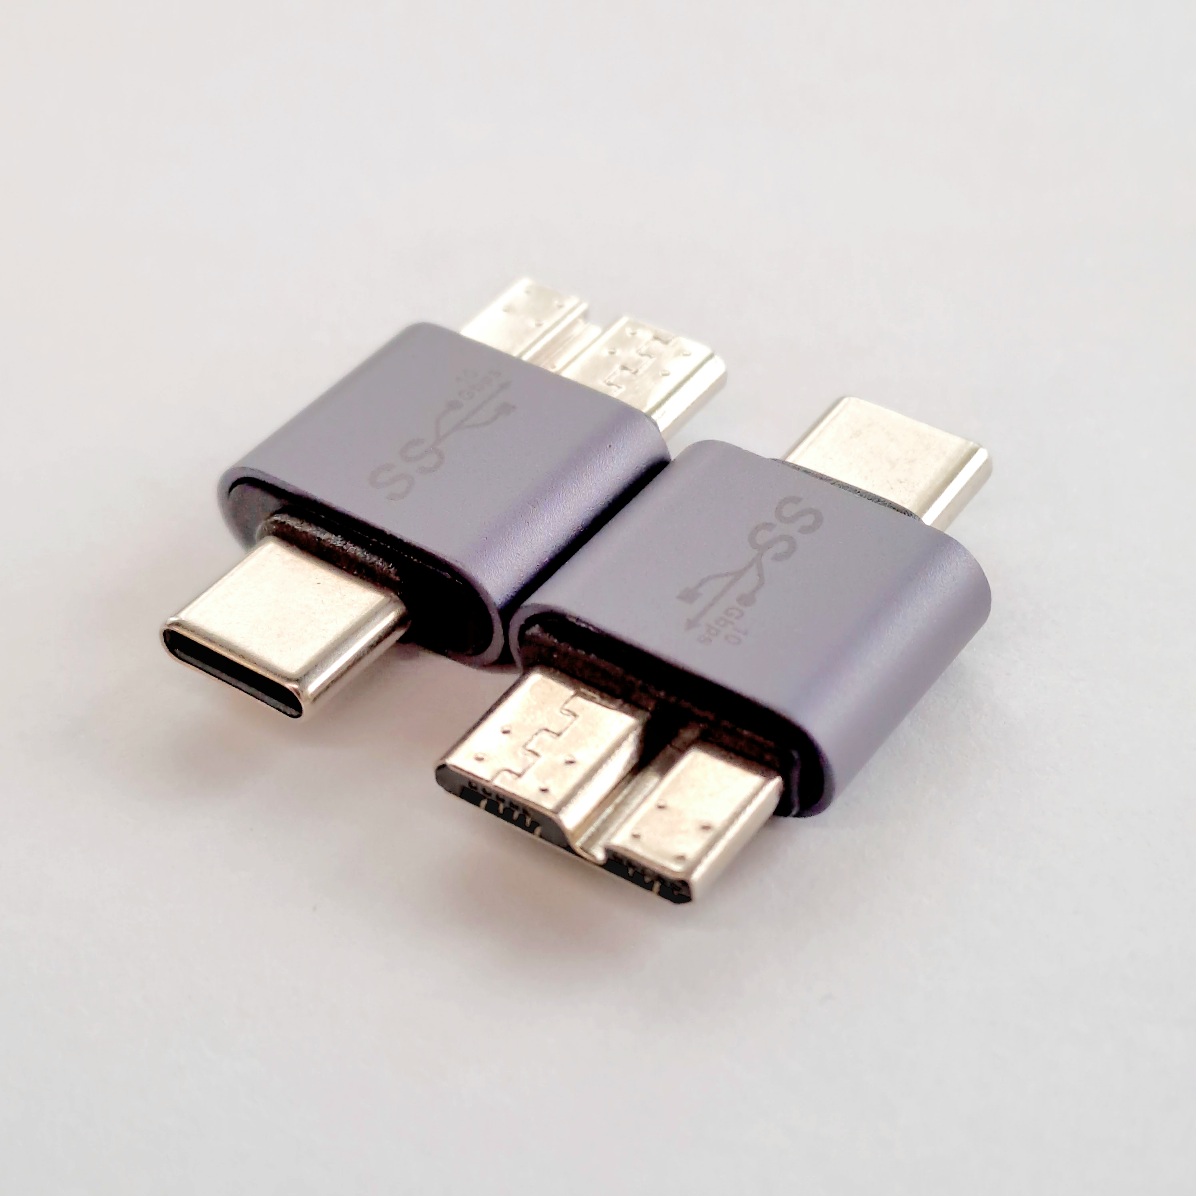 USB 3.0 Micro B Male to Type C Male Adaptor